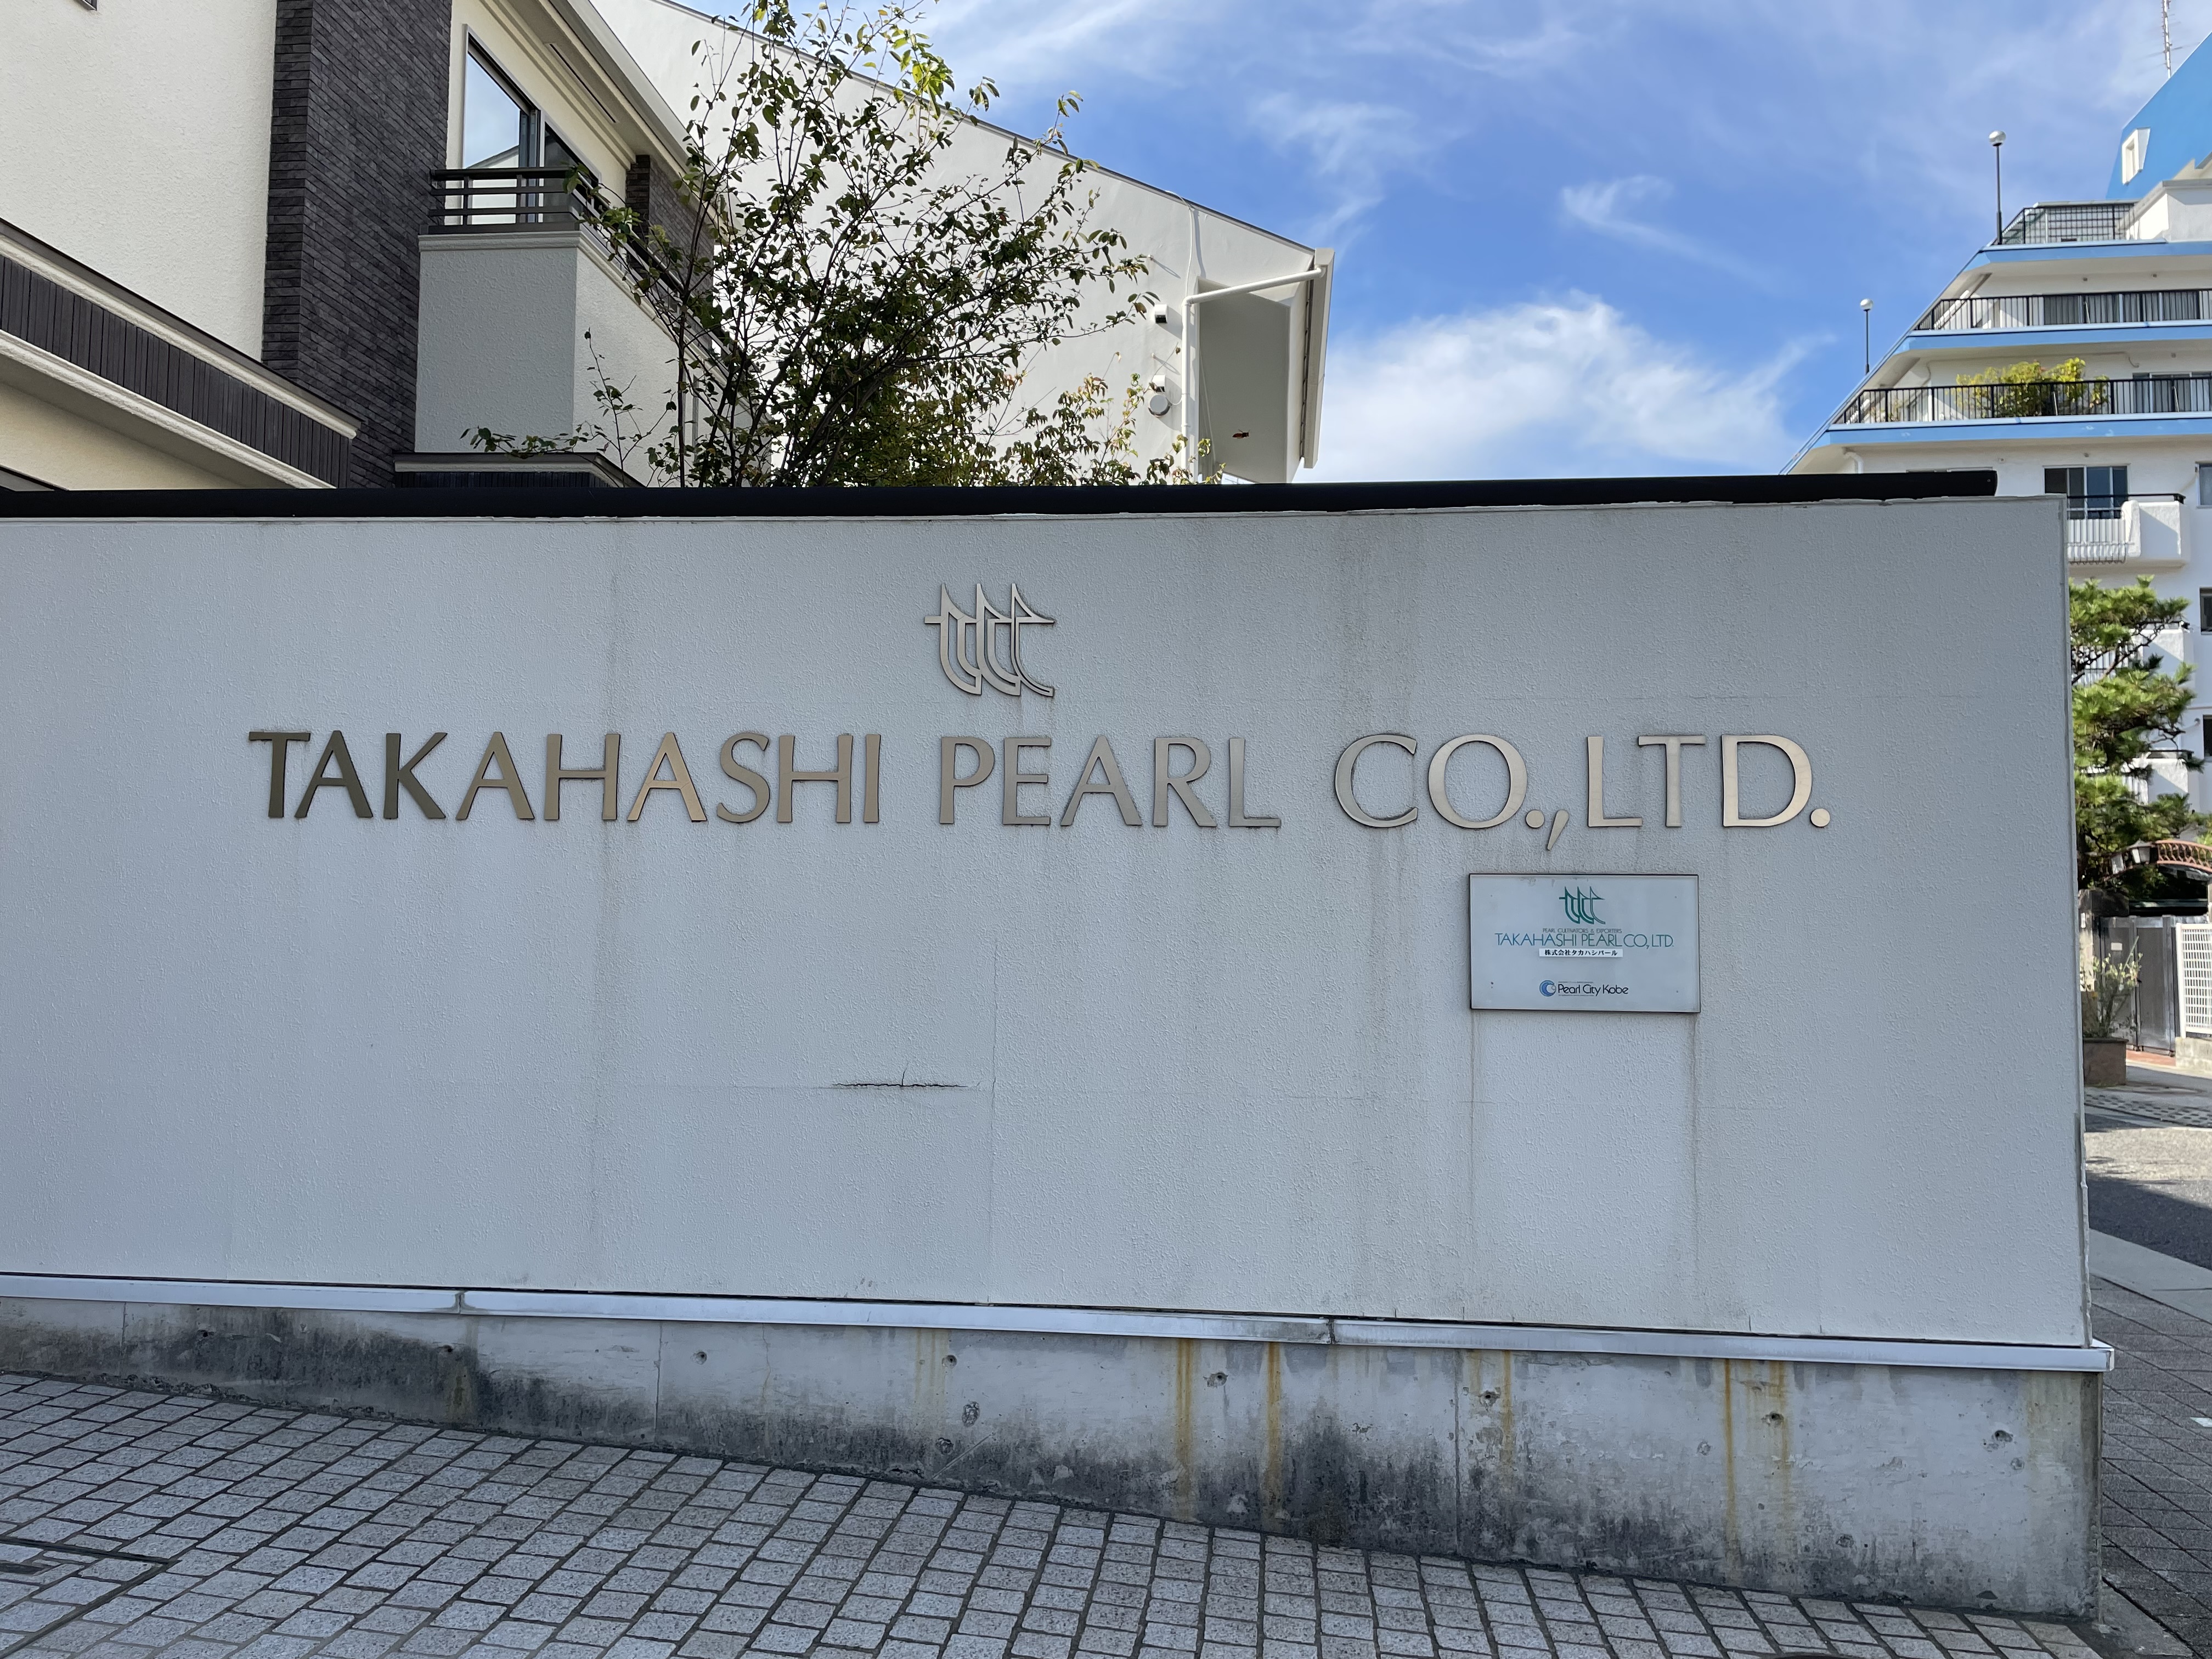 Takahashi Pearl Company